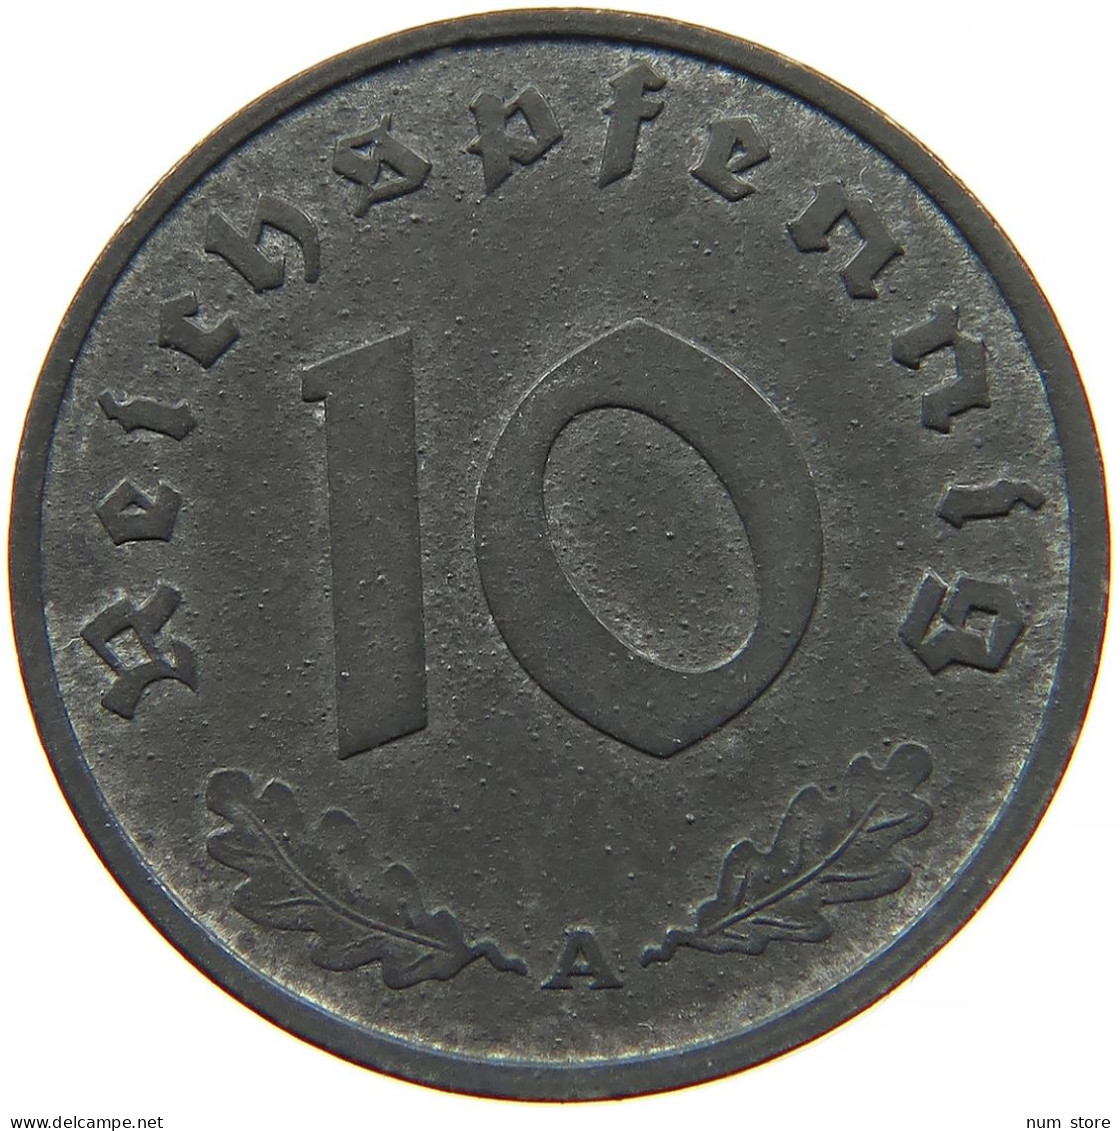 ALLIIERTE BESETZUNG 10 REICHSPFENNIG 1947 A  #t028 0349 - 10 Reichspfennig